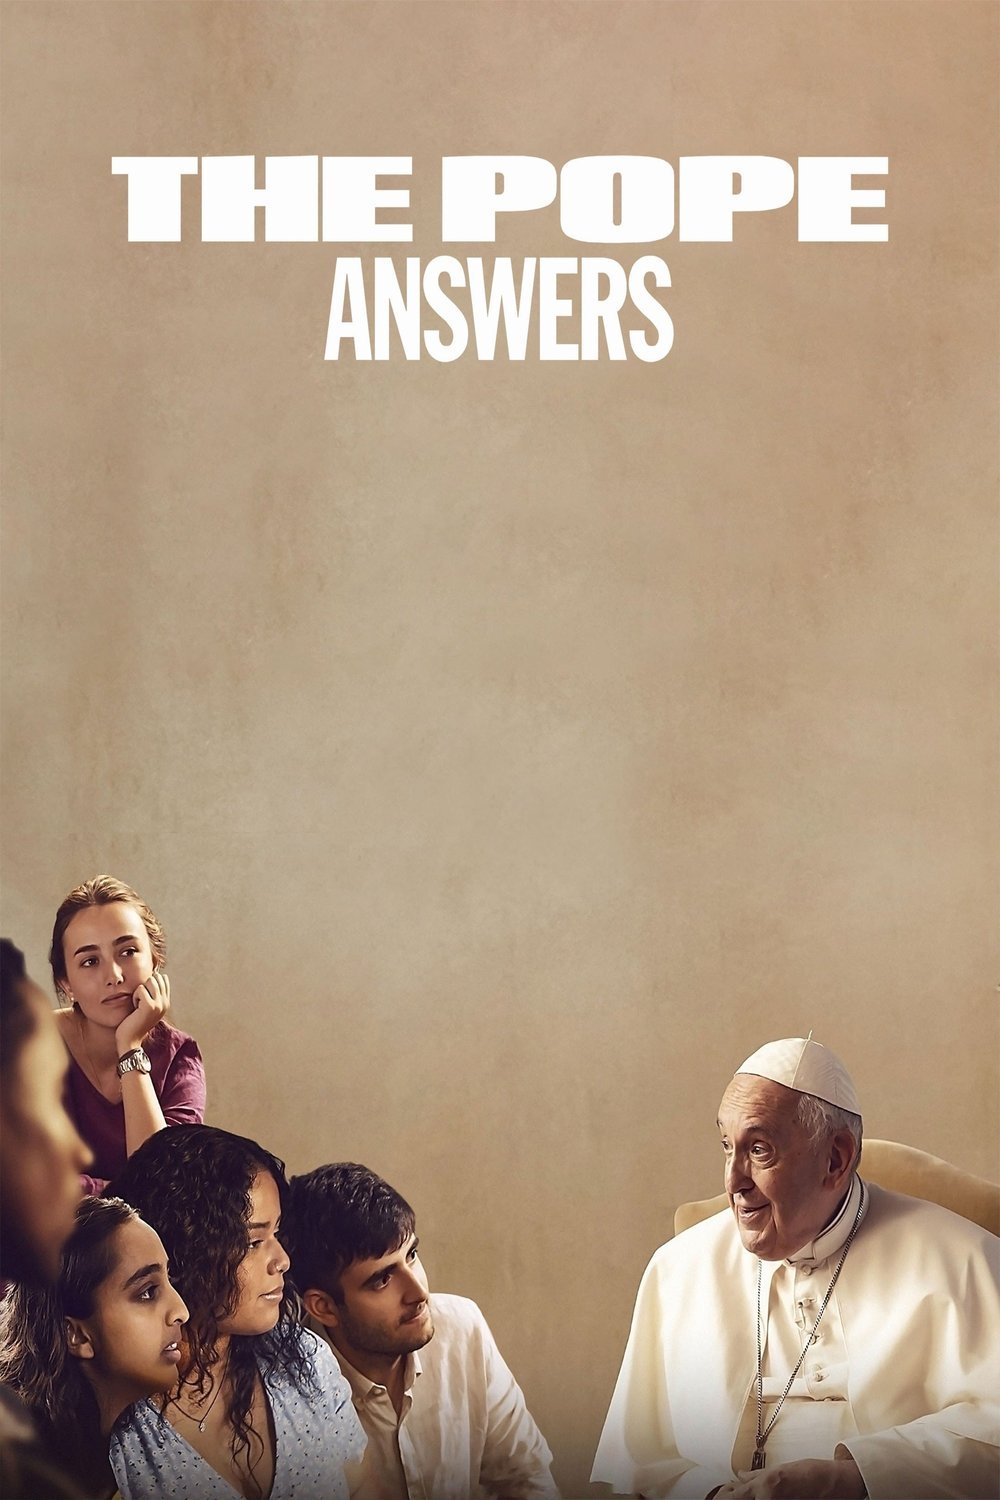 L'affiche originale du film The Pope: Answers en espagnol